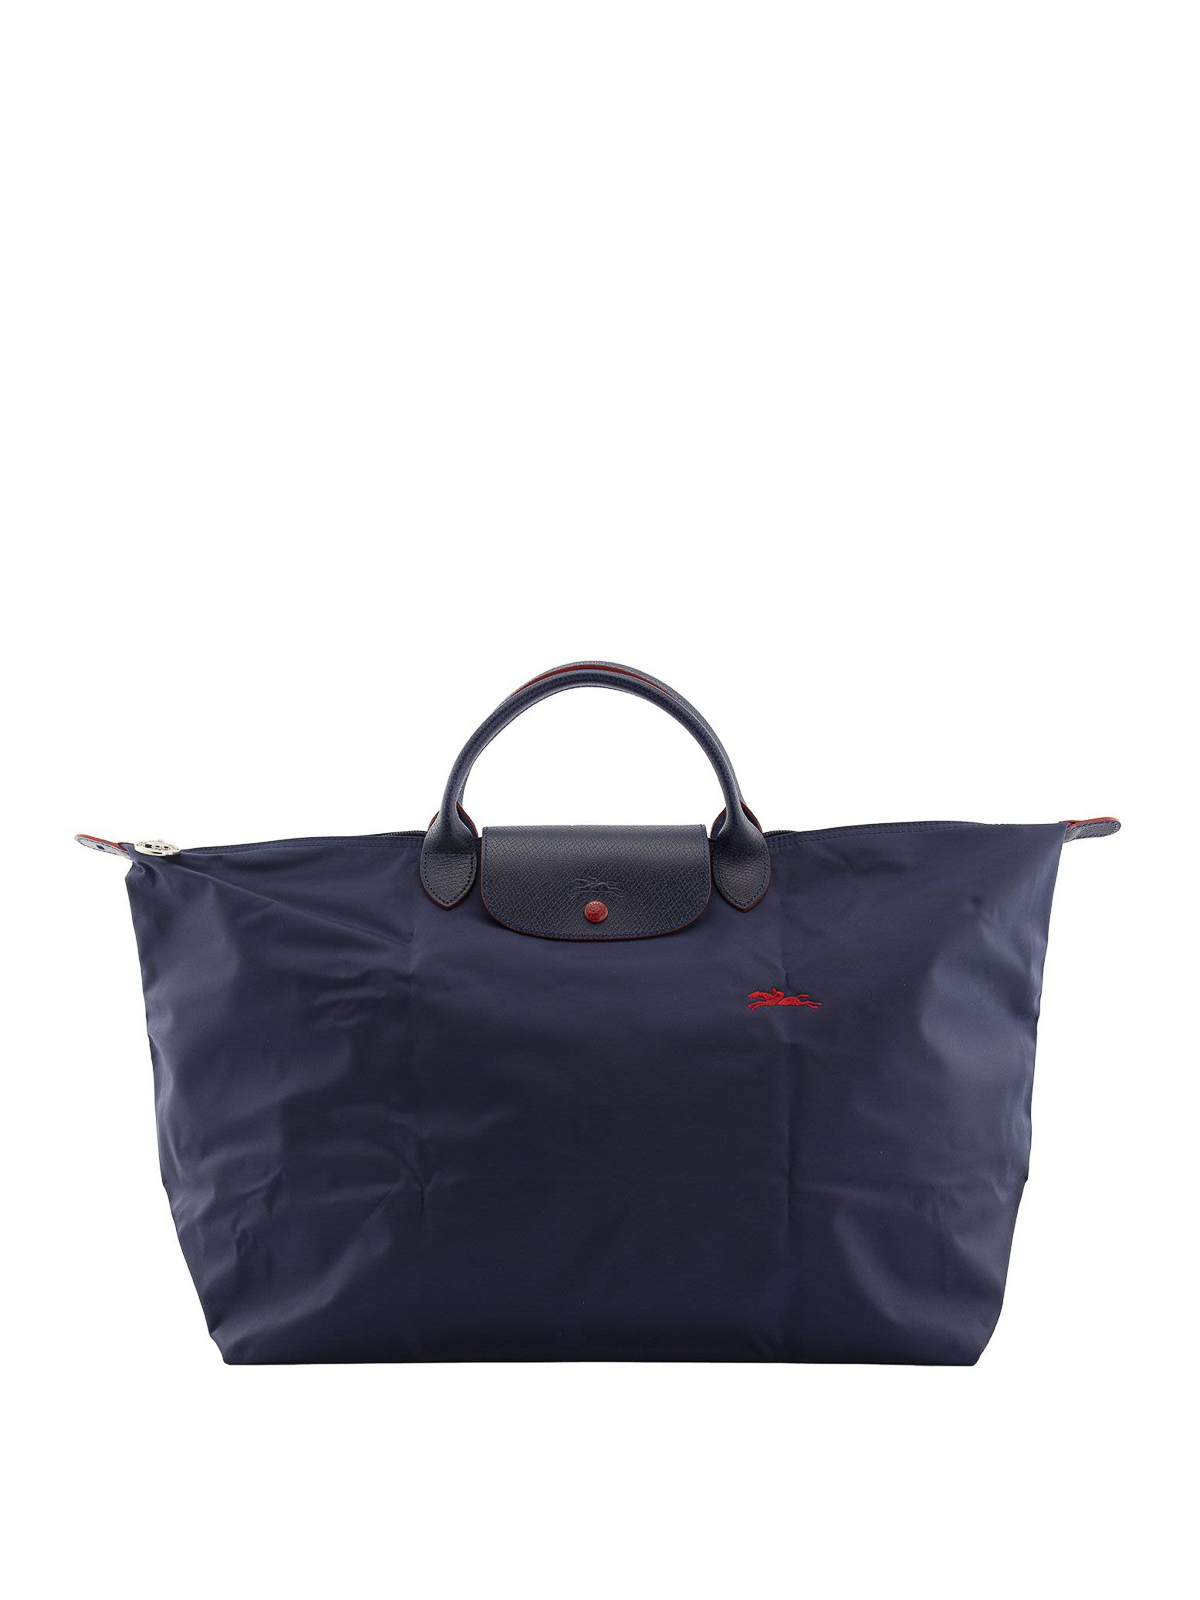 Bolsos Shopping Longchamp - Bolso Shopping - Le Pliage - 1624619556